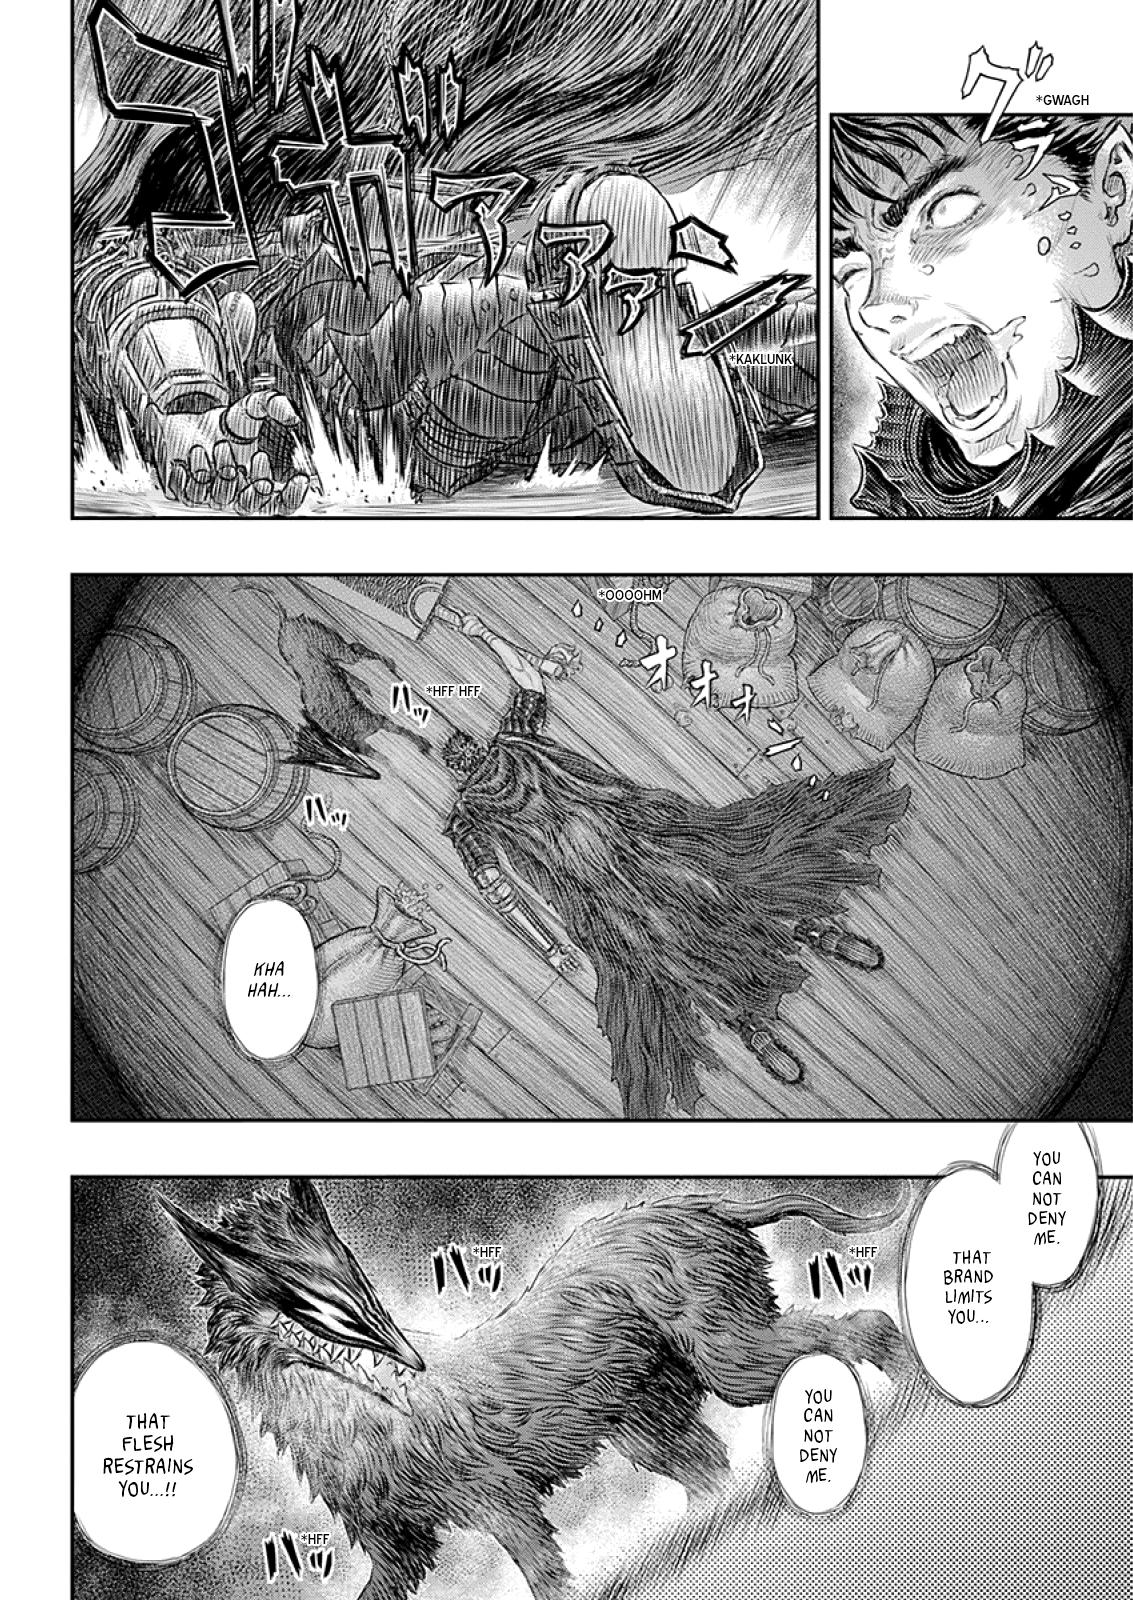 Berserk Manga Chapter 373 image 16